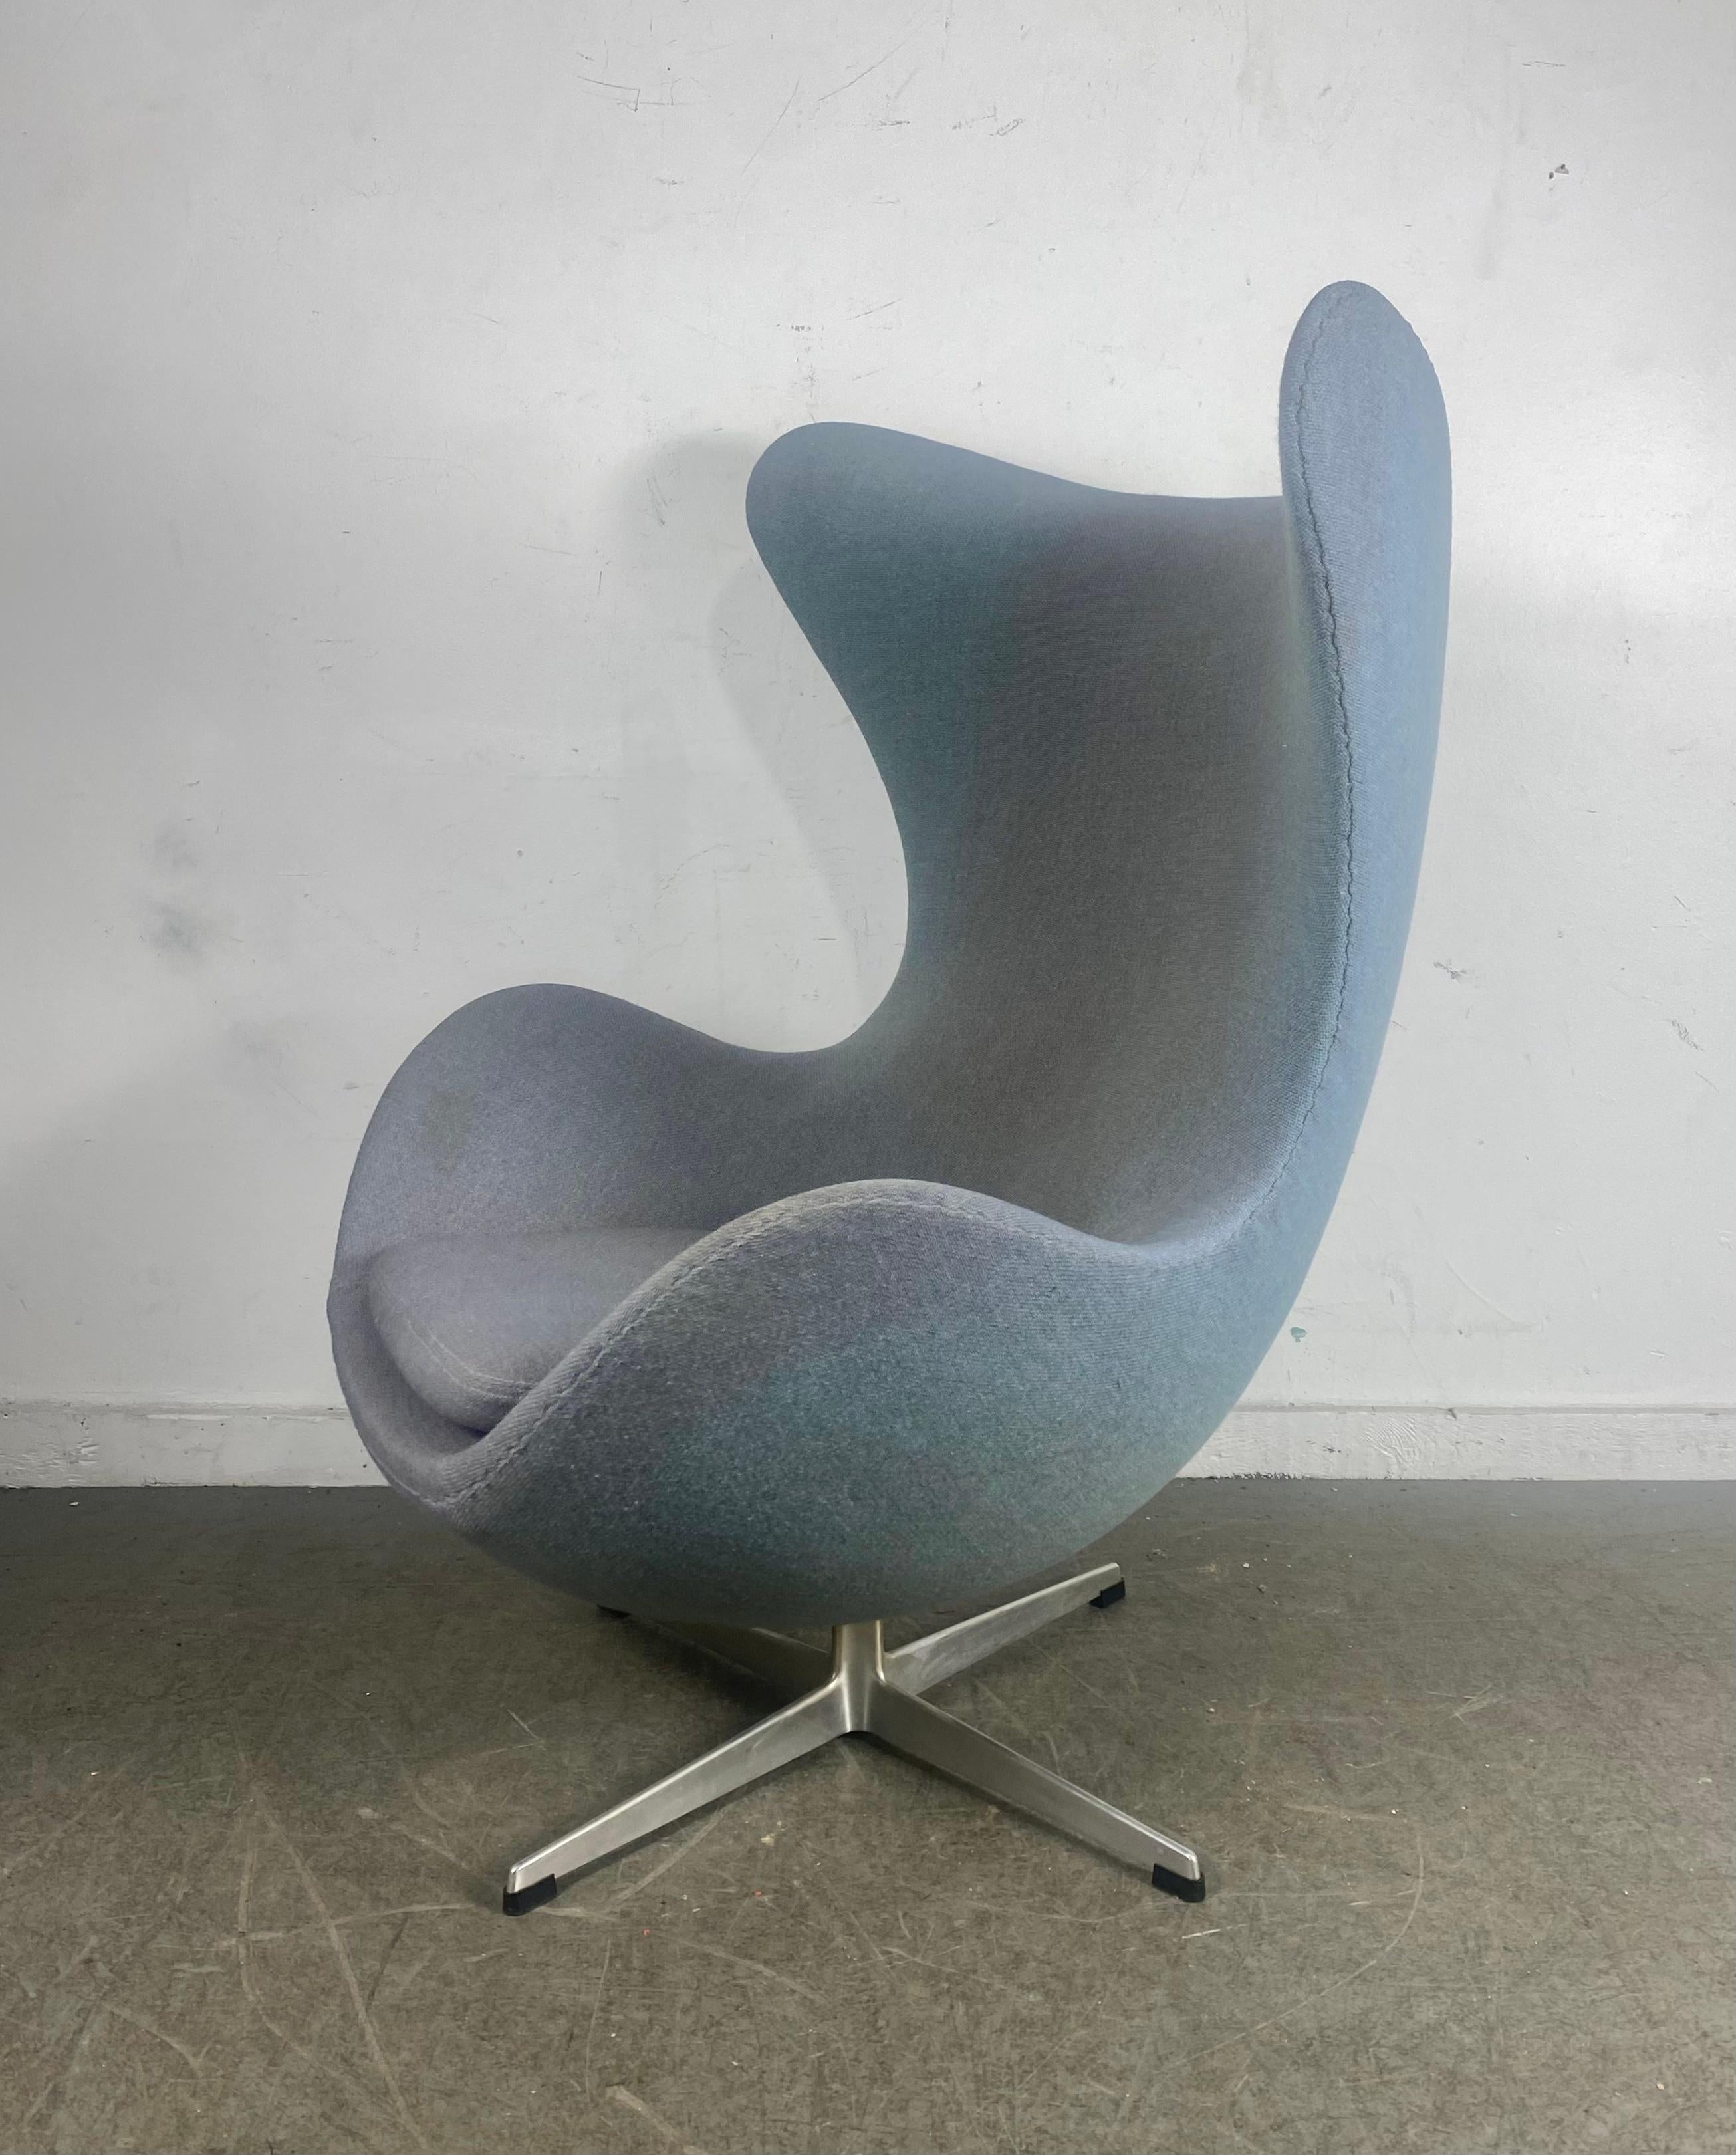 Belle chaise à oeufs conçue par Arne Jacobsen et fabriquée par Fritzhansen. fabriquée au Danemark. Condit le tissu d'origine en laine gris/bleu en état d'utilisation..décoloration mineure. Livraison en main propre à New York City ou n'importe où en